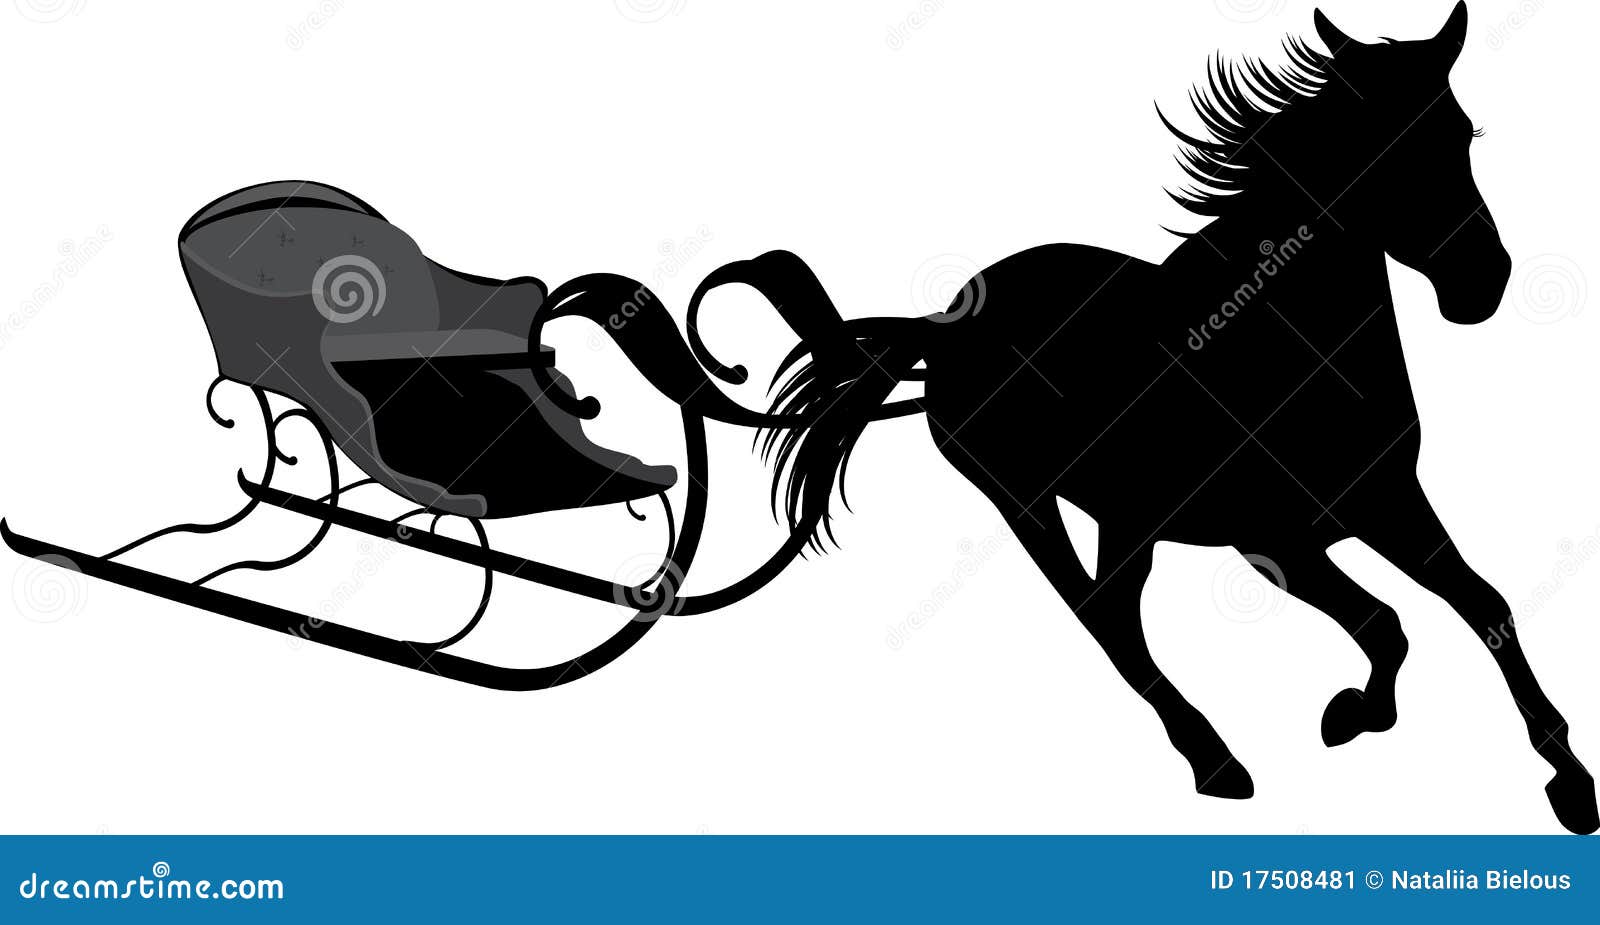 Лошади сани деревья бык. Лошадь с санями силуэт. Силуэт Деда Мороза на санях с лошадьми. Лошадь с санями вектор. Трафарет лошадь с санями.